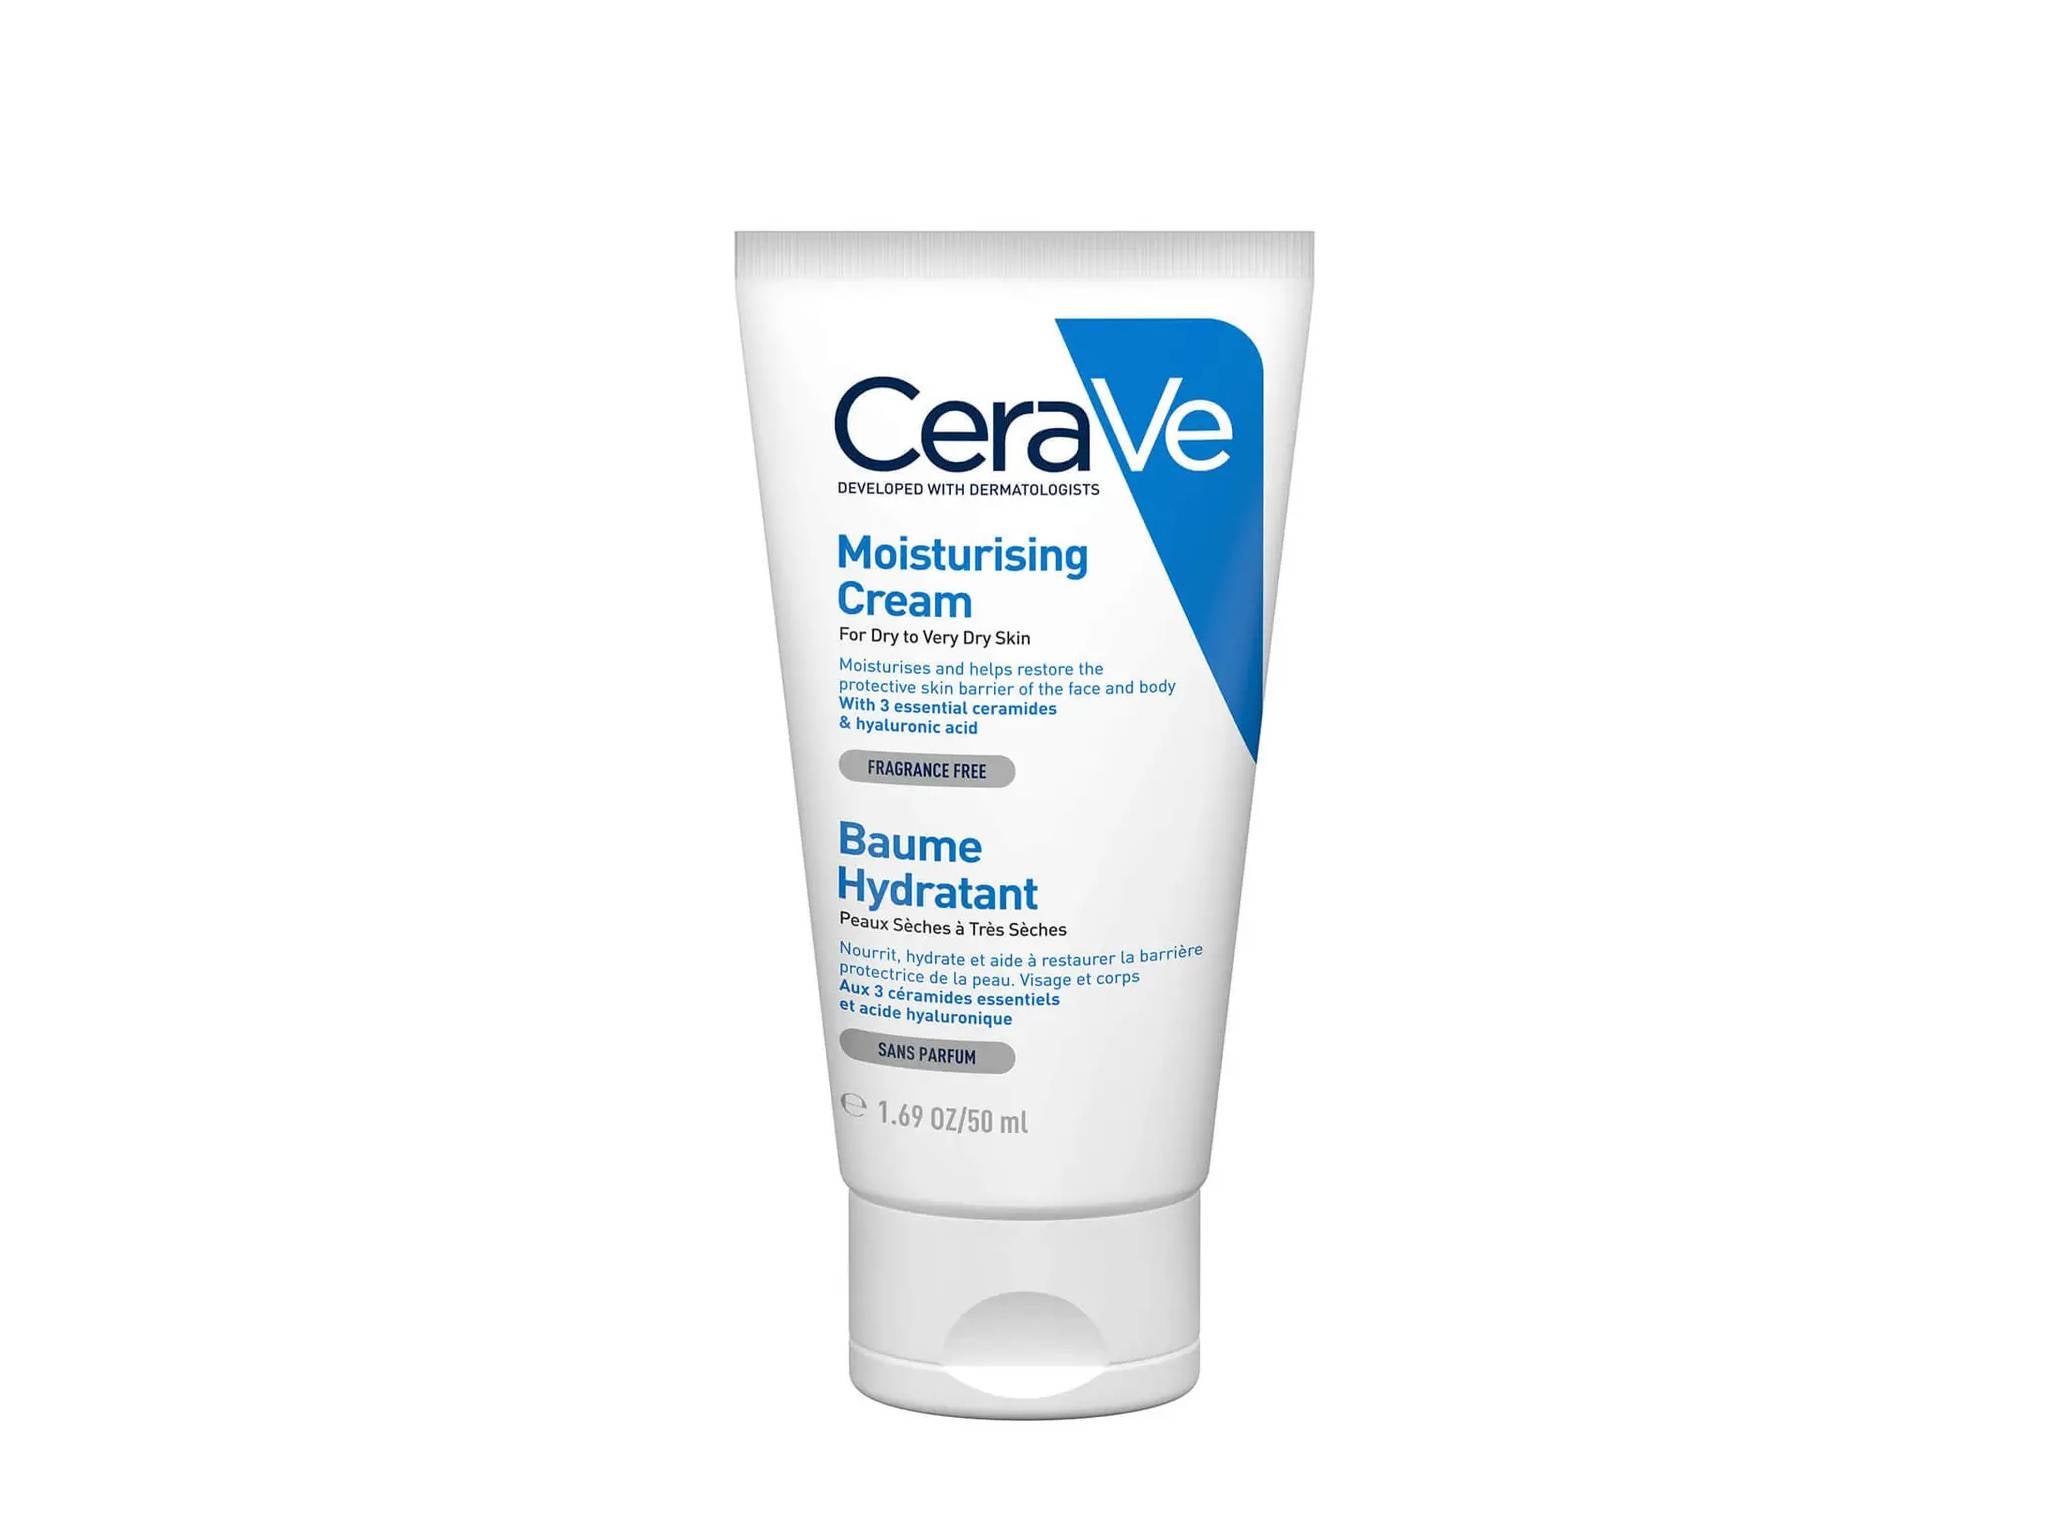 CeraVe moisturising cream